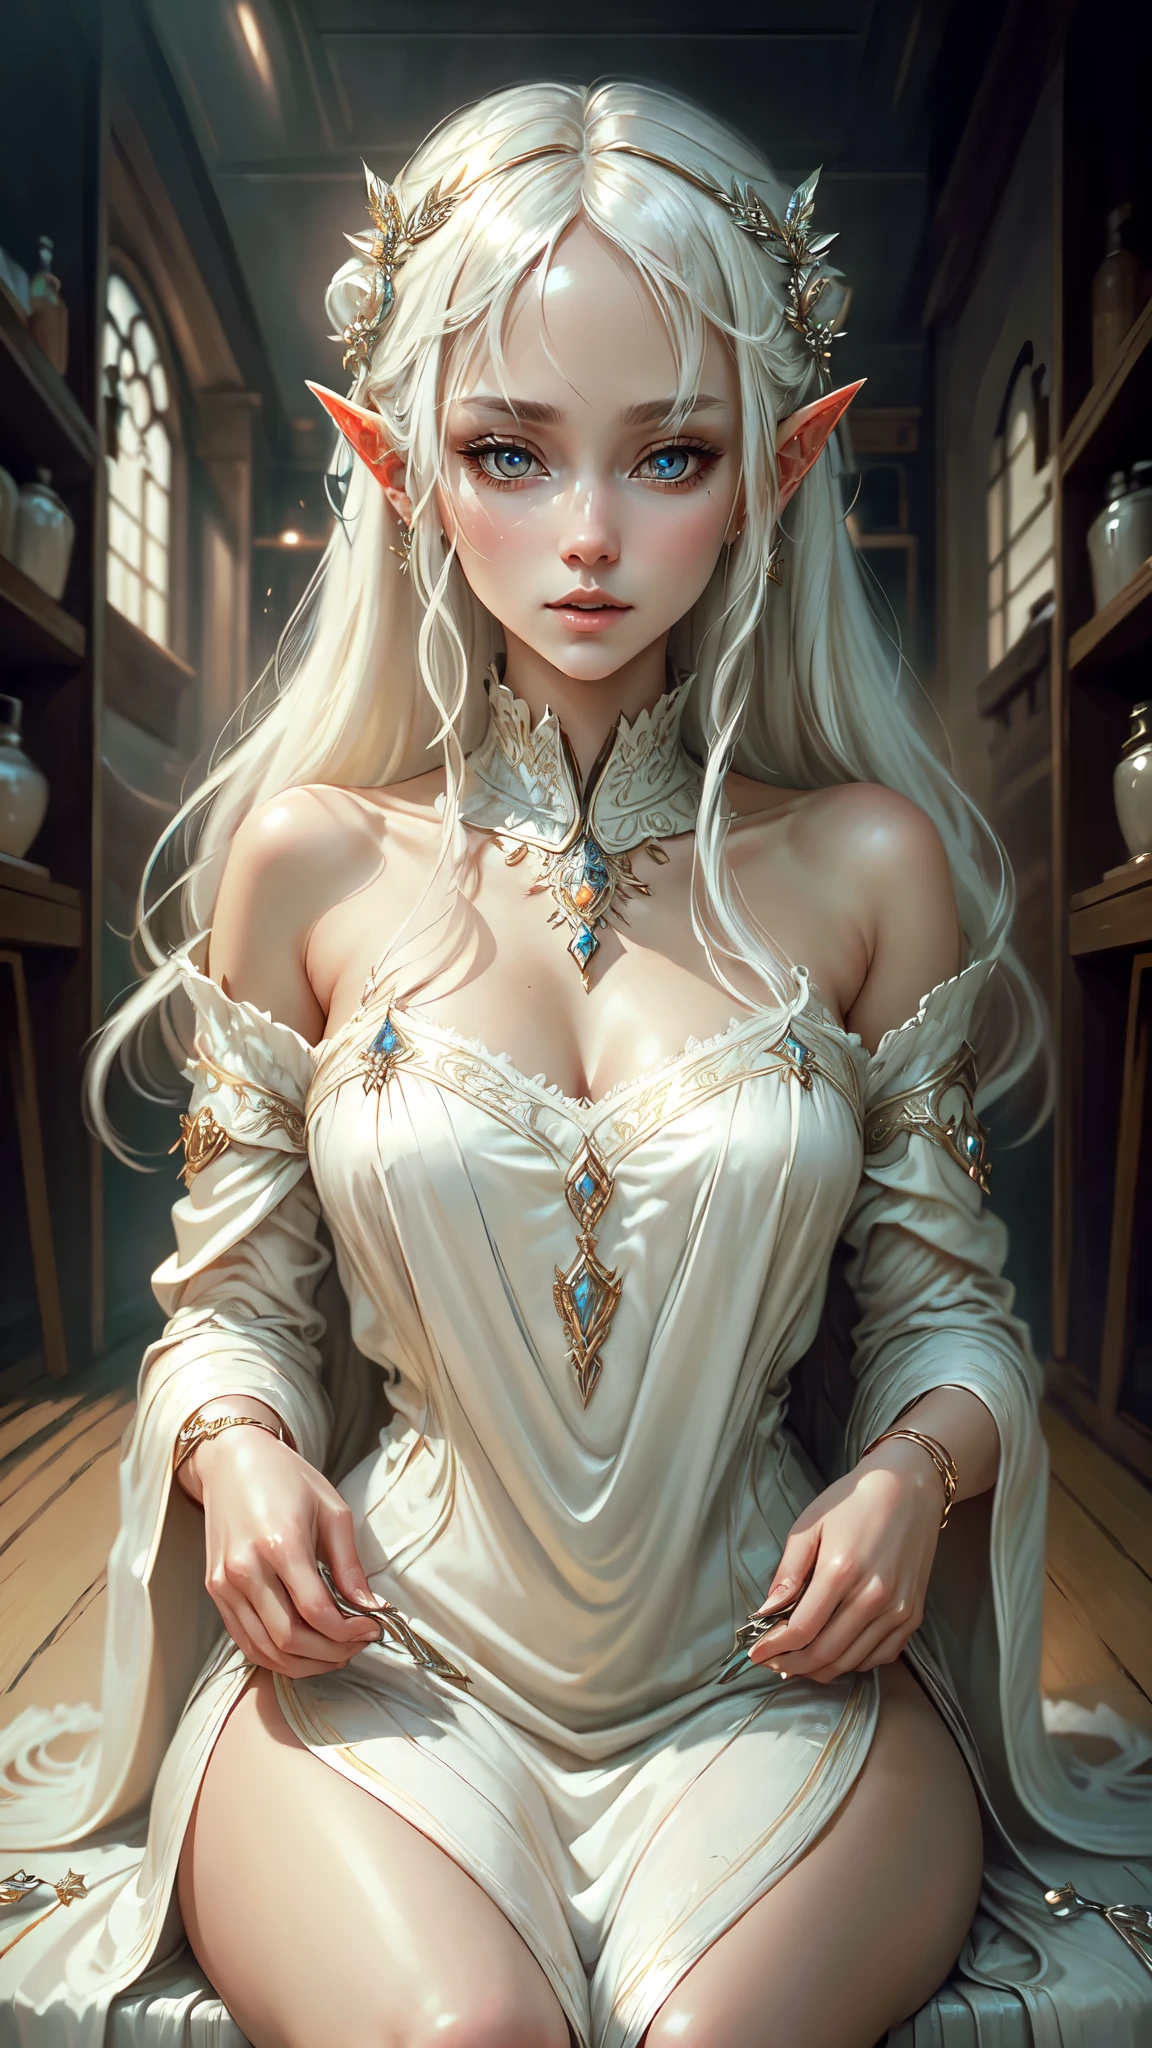 ((meilleure qualité)), ((chef-d&#39;œuvre)), (très détaillé:1.3),une femme cheveux blancs franges elfes robe blanc or accessoires, assis timide regard rougi, visage détaillé yeux détaillés, mains détaillées